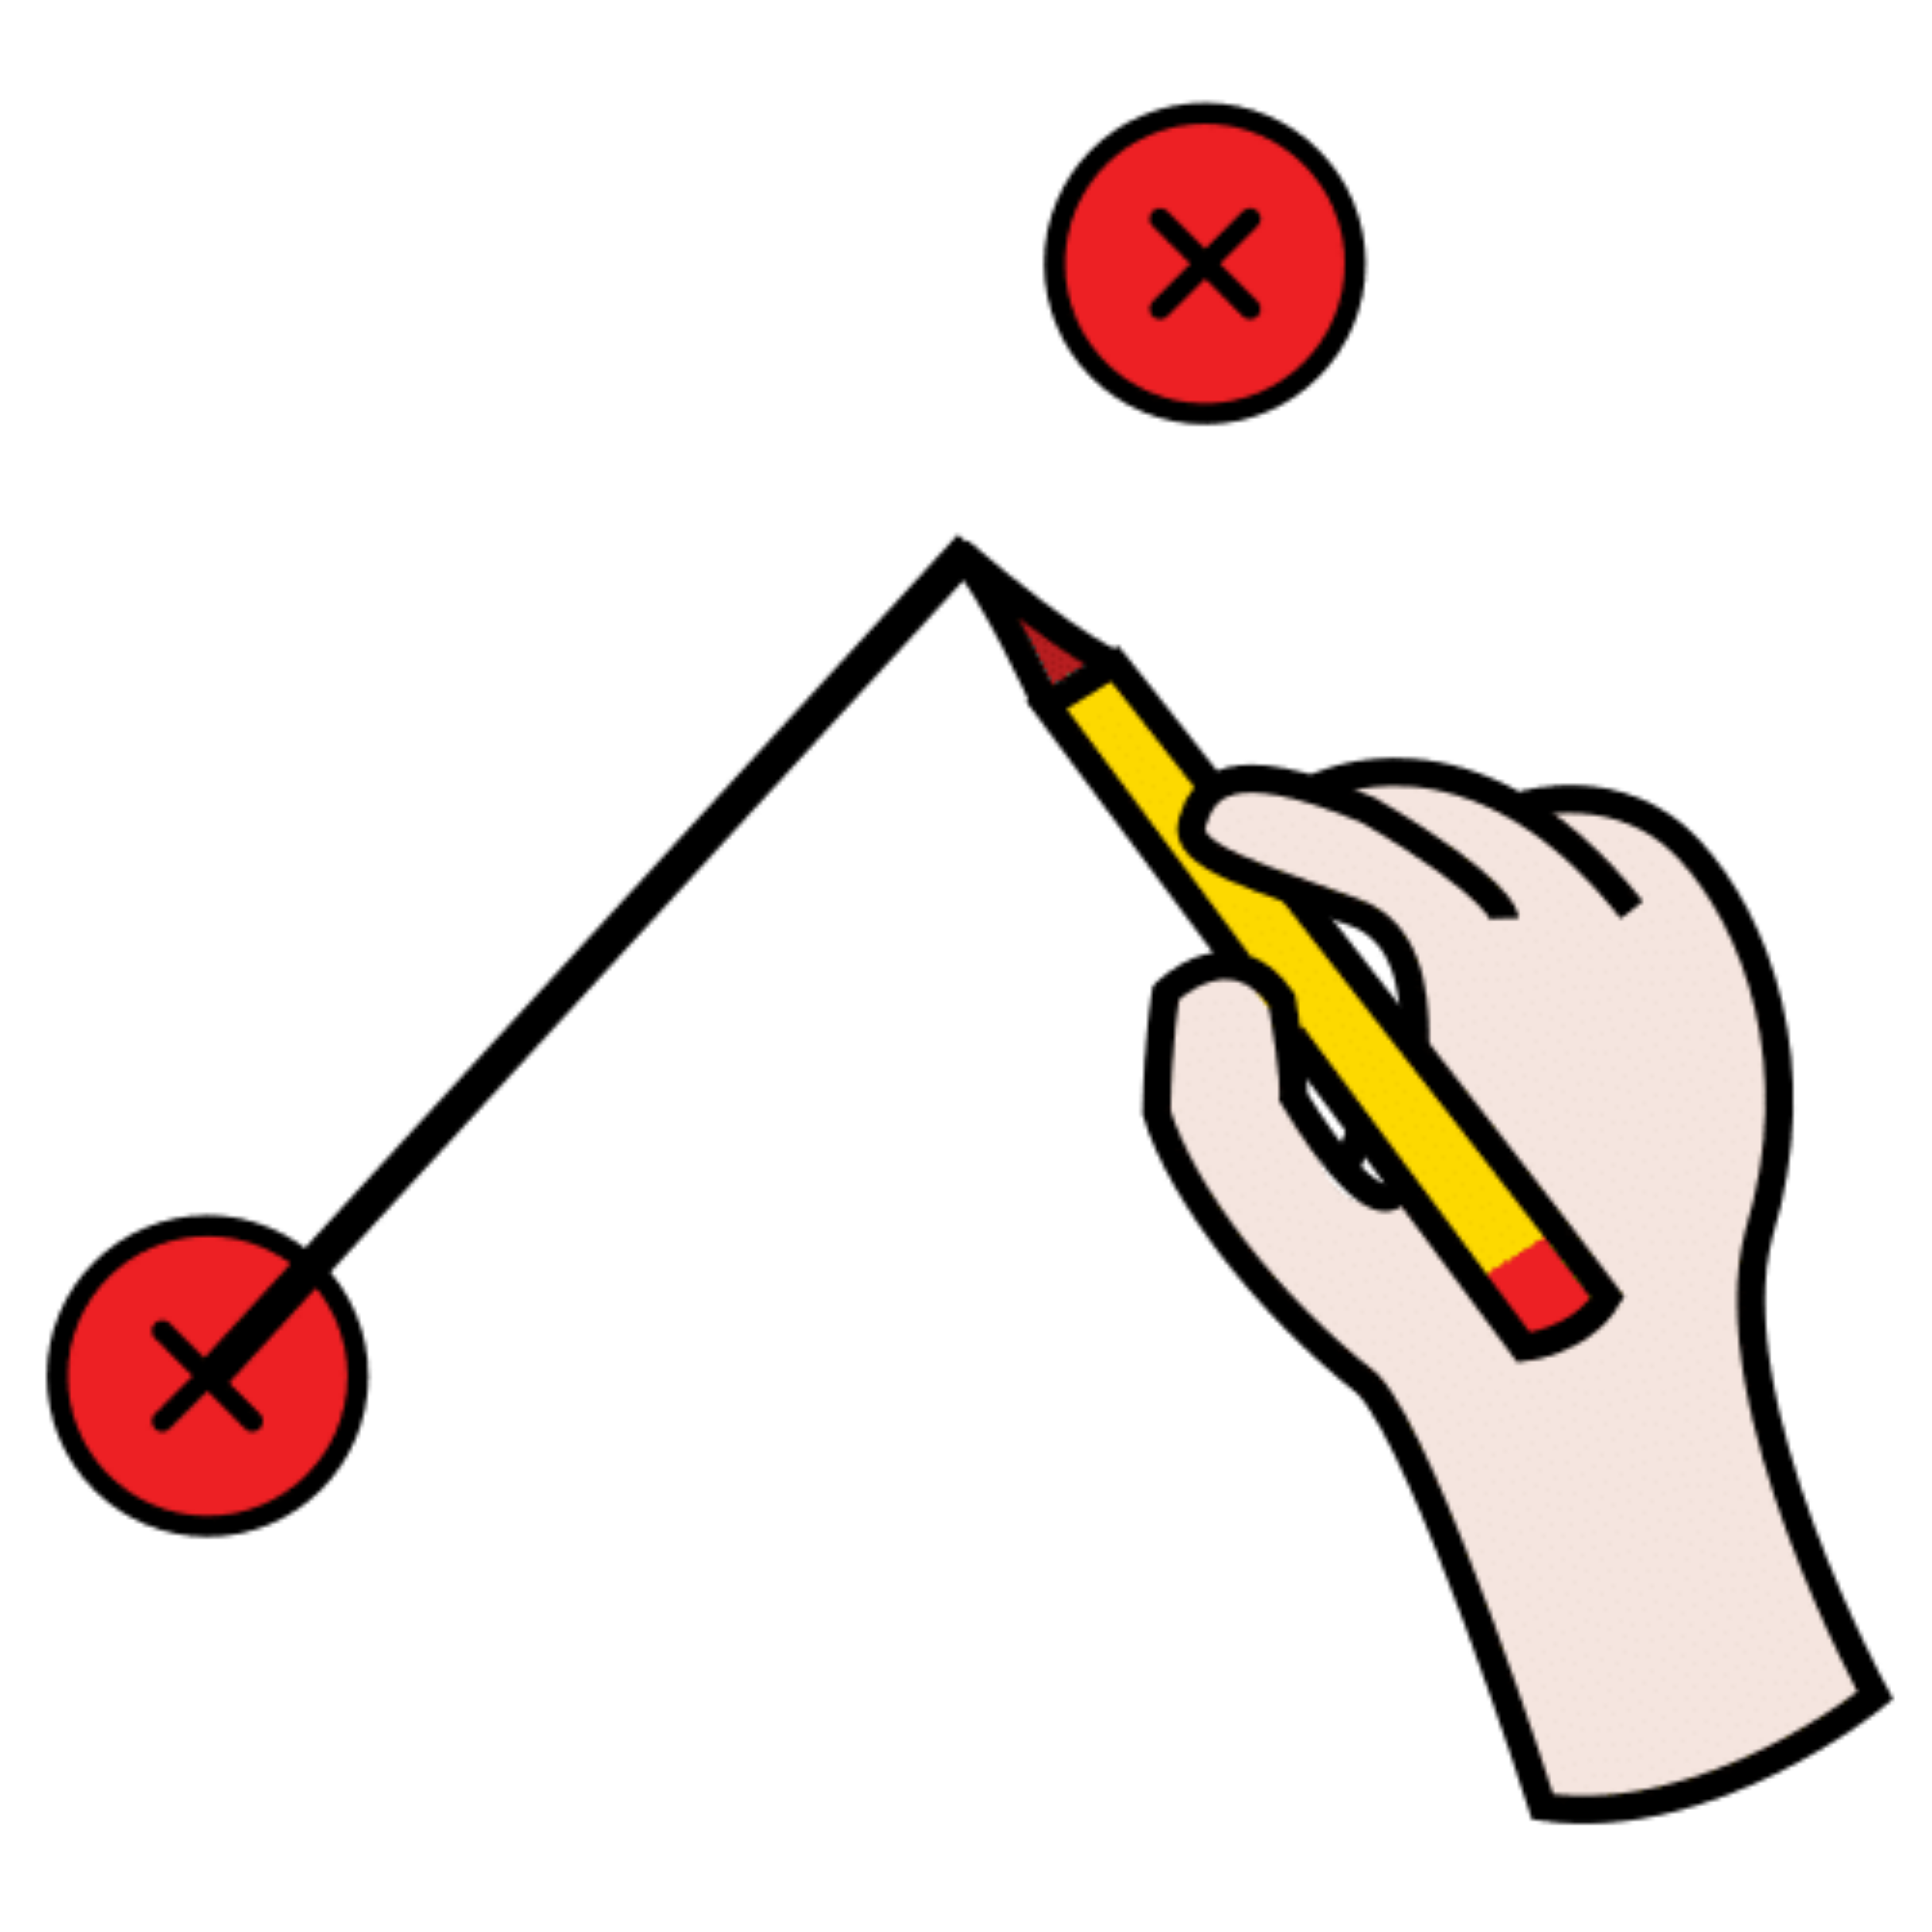 La imagen muestra una ilustración de una mano uniendo dos puntos rojos con un lápiz.